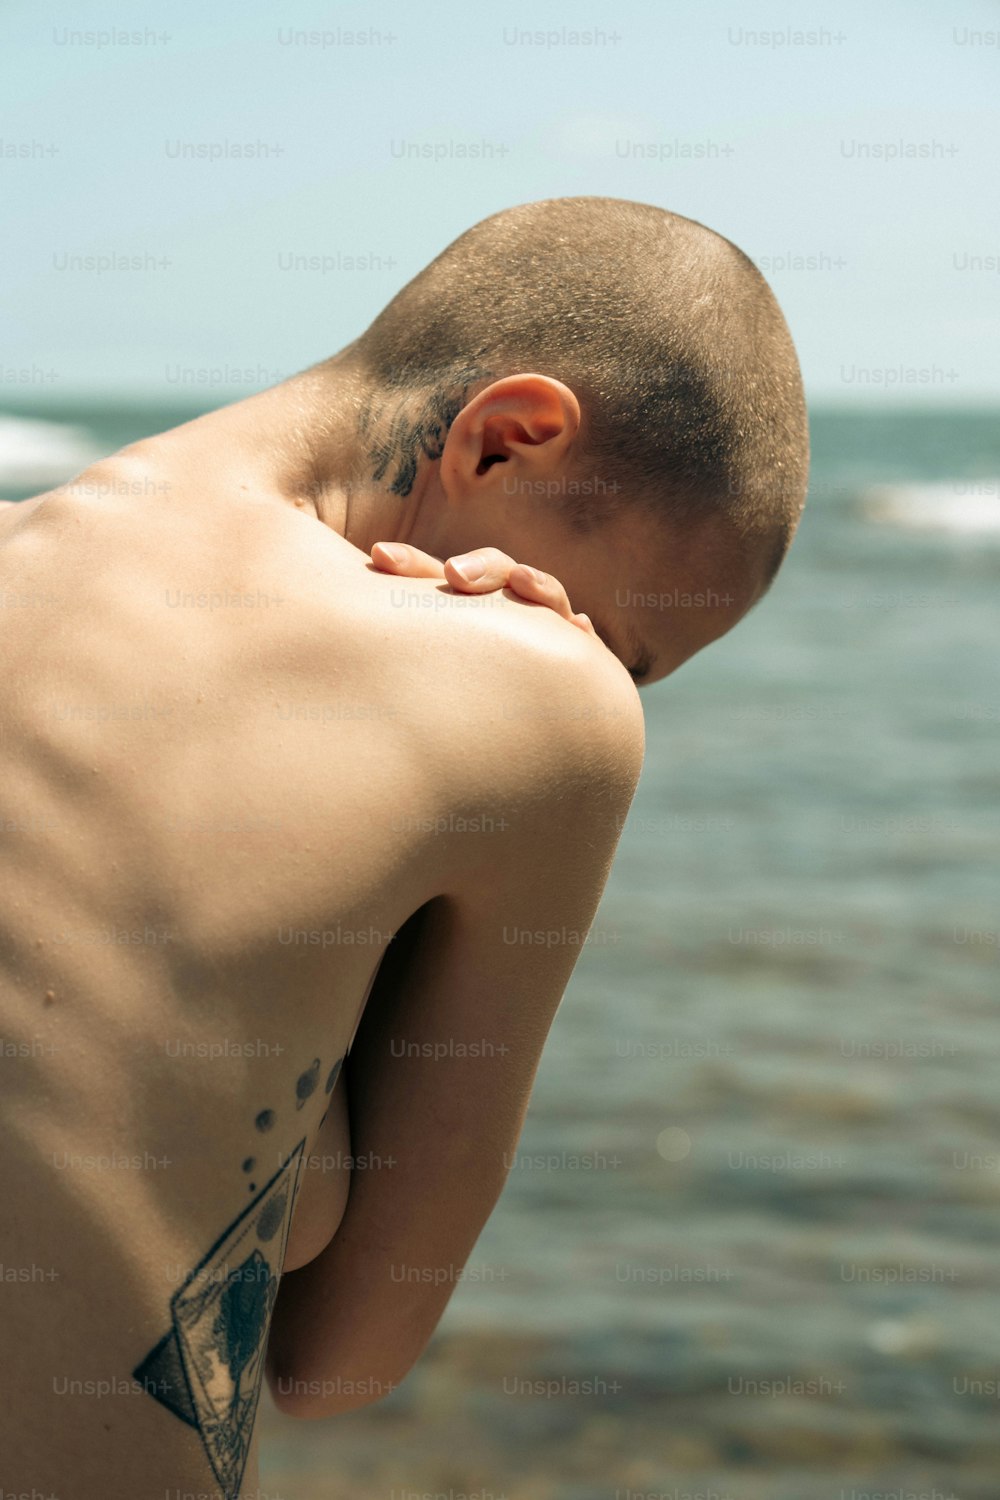 Un hombre con un tatuaje triangular en la espalda